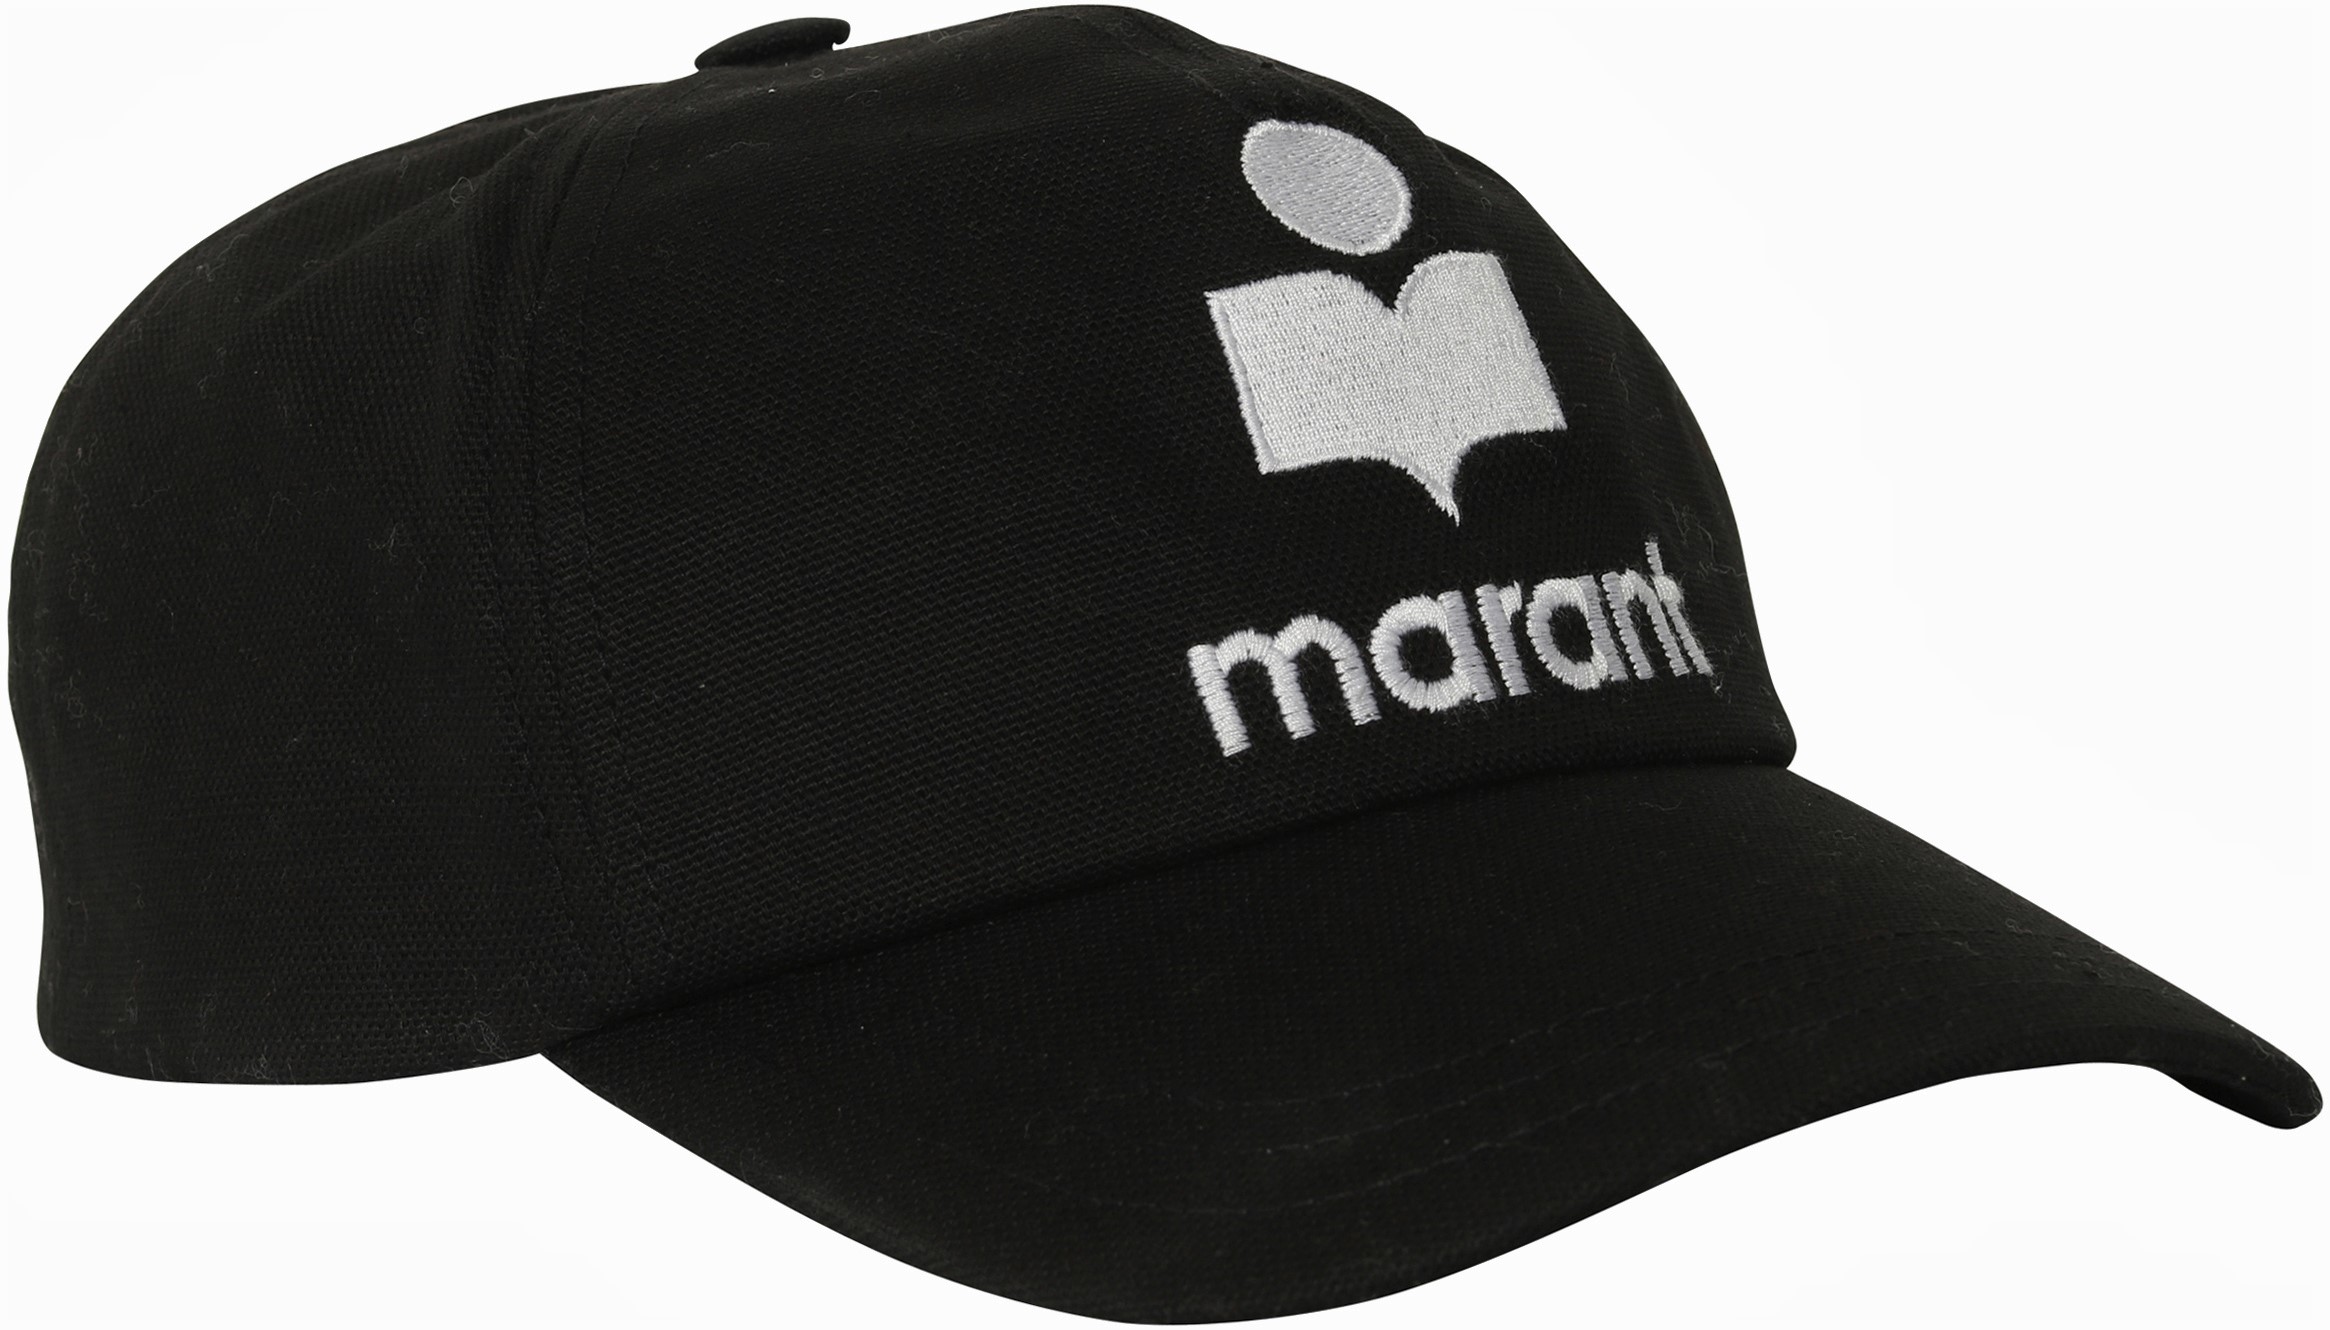 Isabel Marant Tyron Cap in Black/Ecru 57